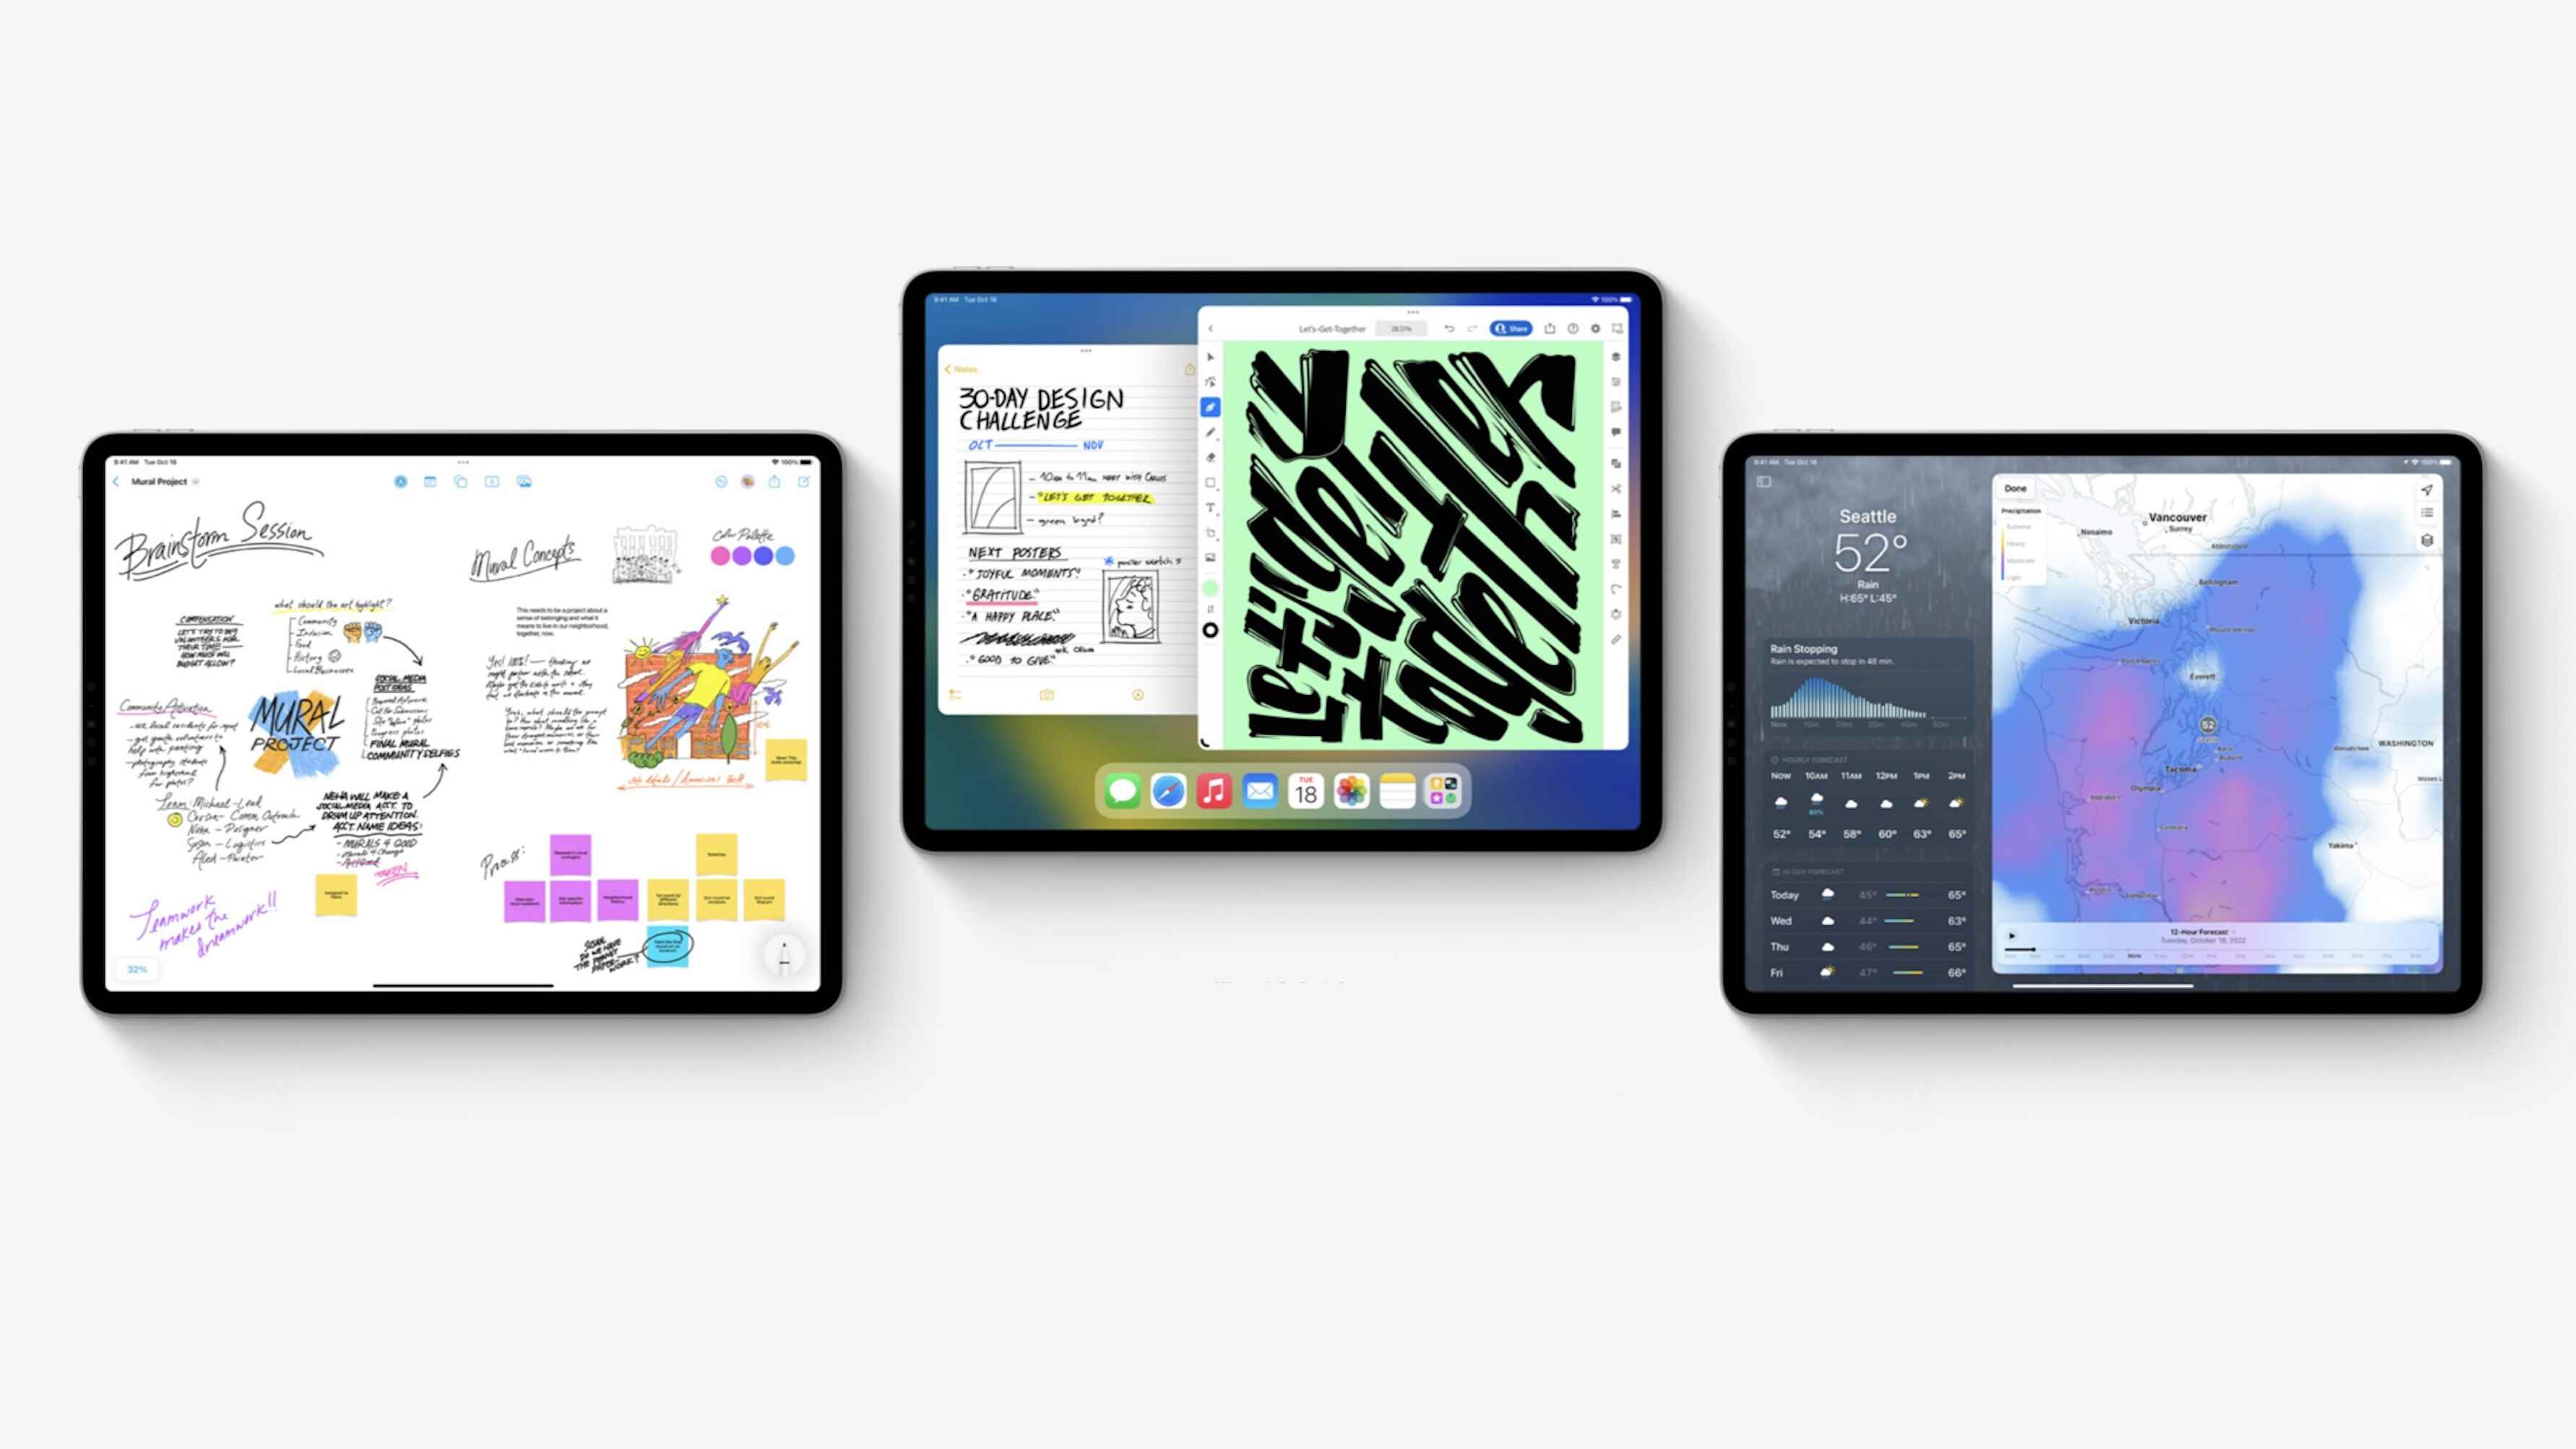 iPad Sorunu: Apple neden tabletlerin tam potansiyeline erişmesine izin vermiyor?